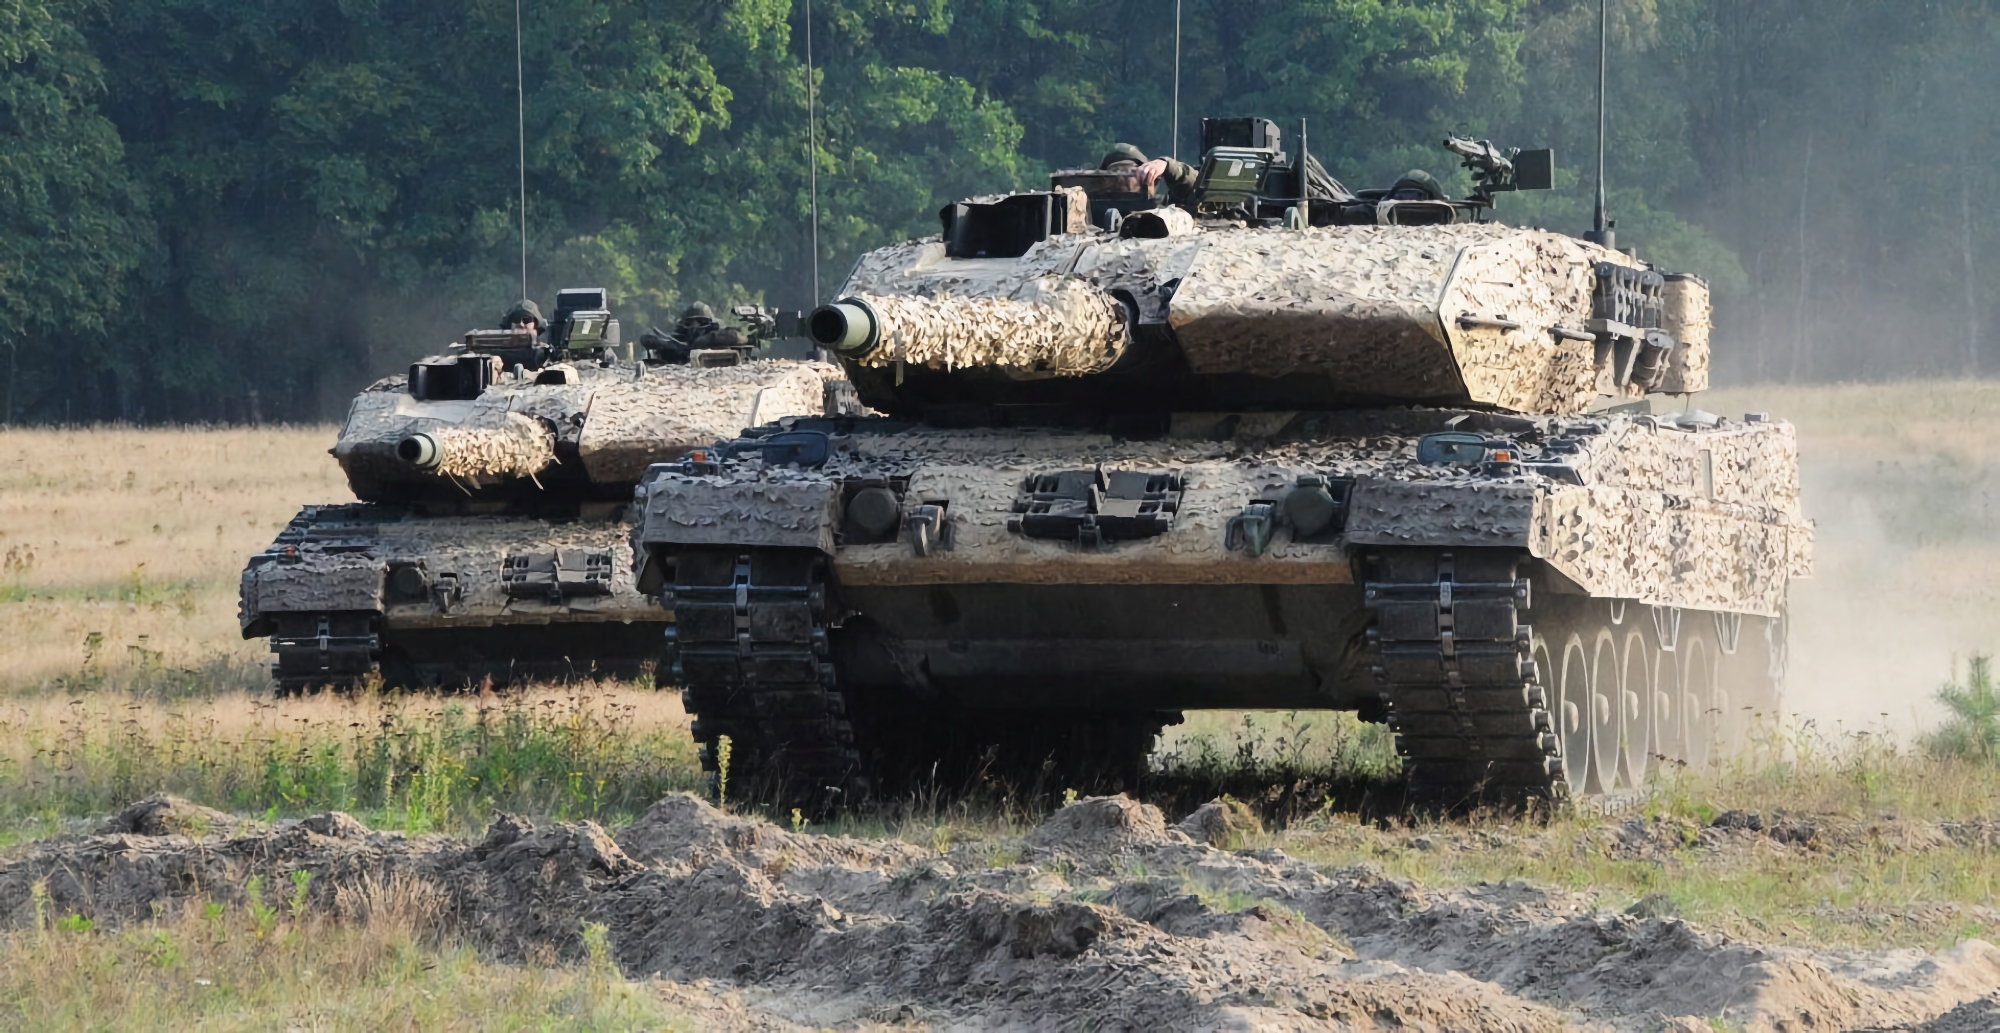 ABC Nachrichten: 12 Länder sind bereit, 100 Leopard-2-Panzer an die Ukraine zu liefern, sobald Deutschland die Erlaubnis zur Lieferung erteilt